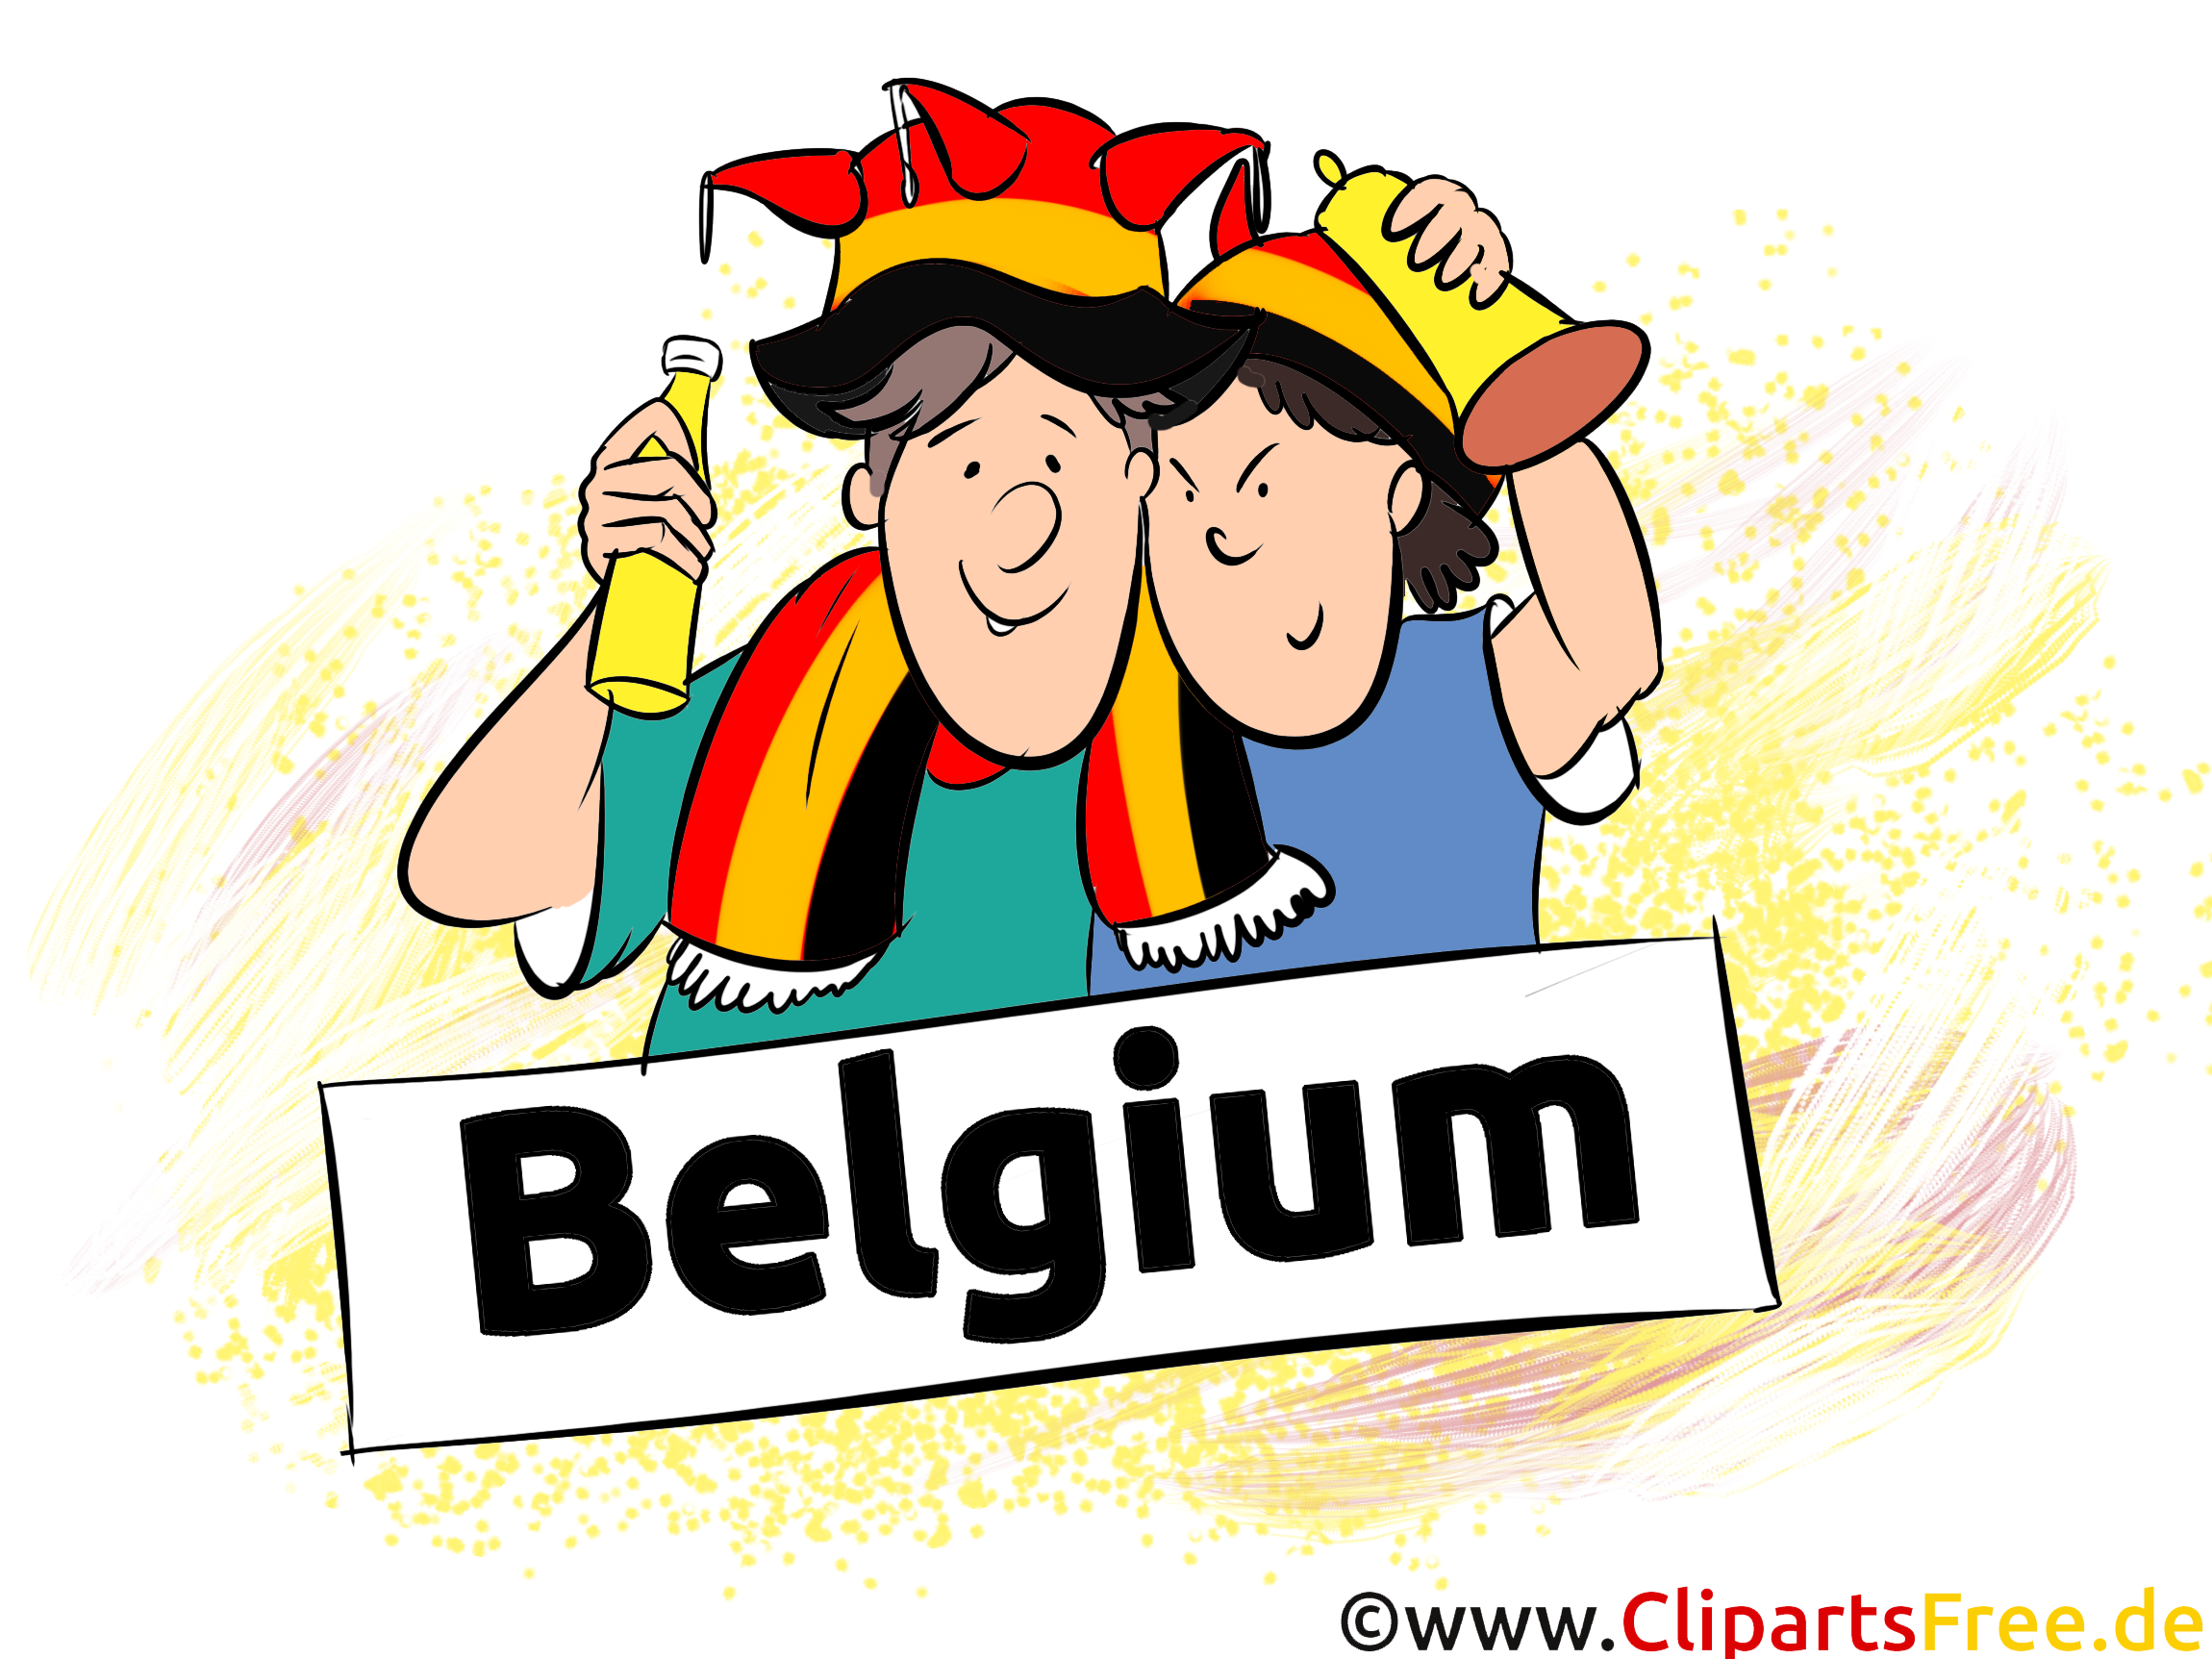 Fans Joueur Belgique Football Soccer gratuit Image - Belgique football ...